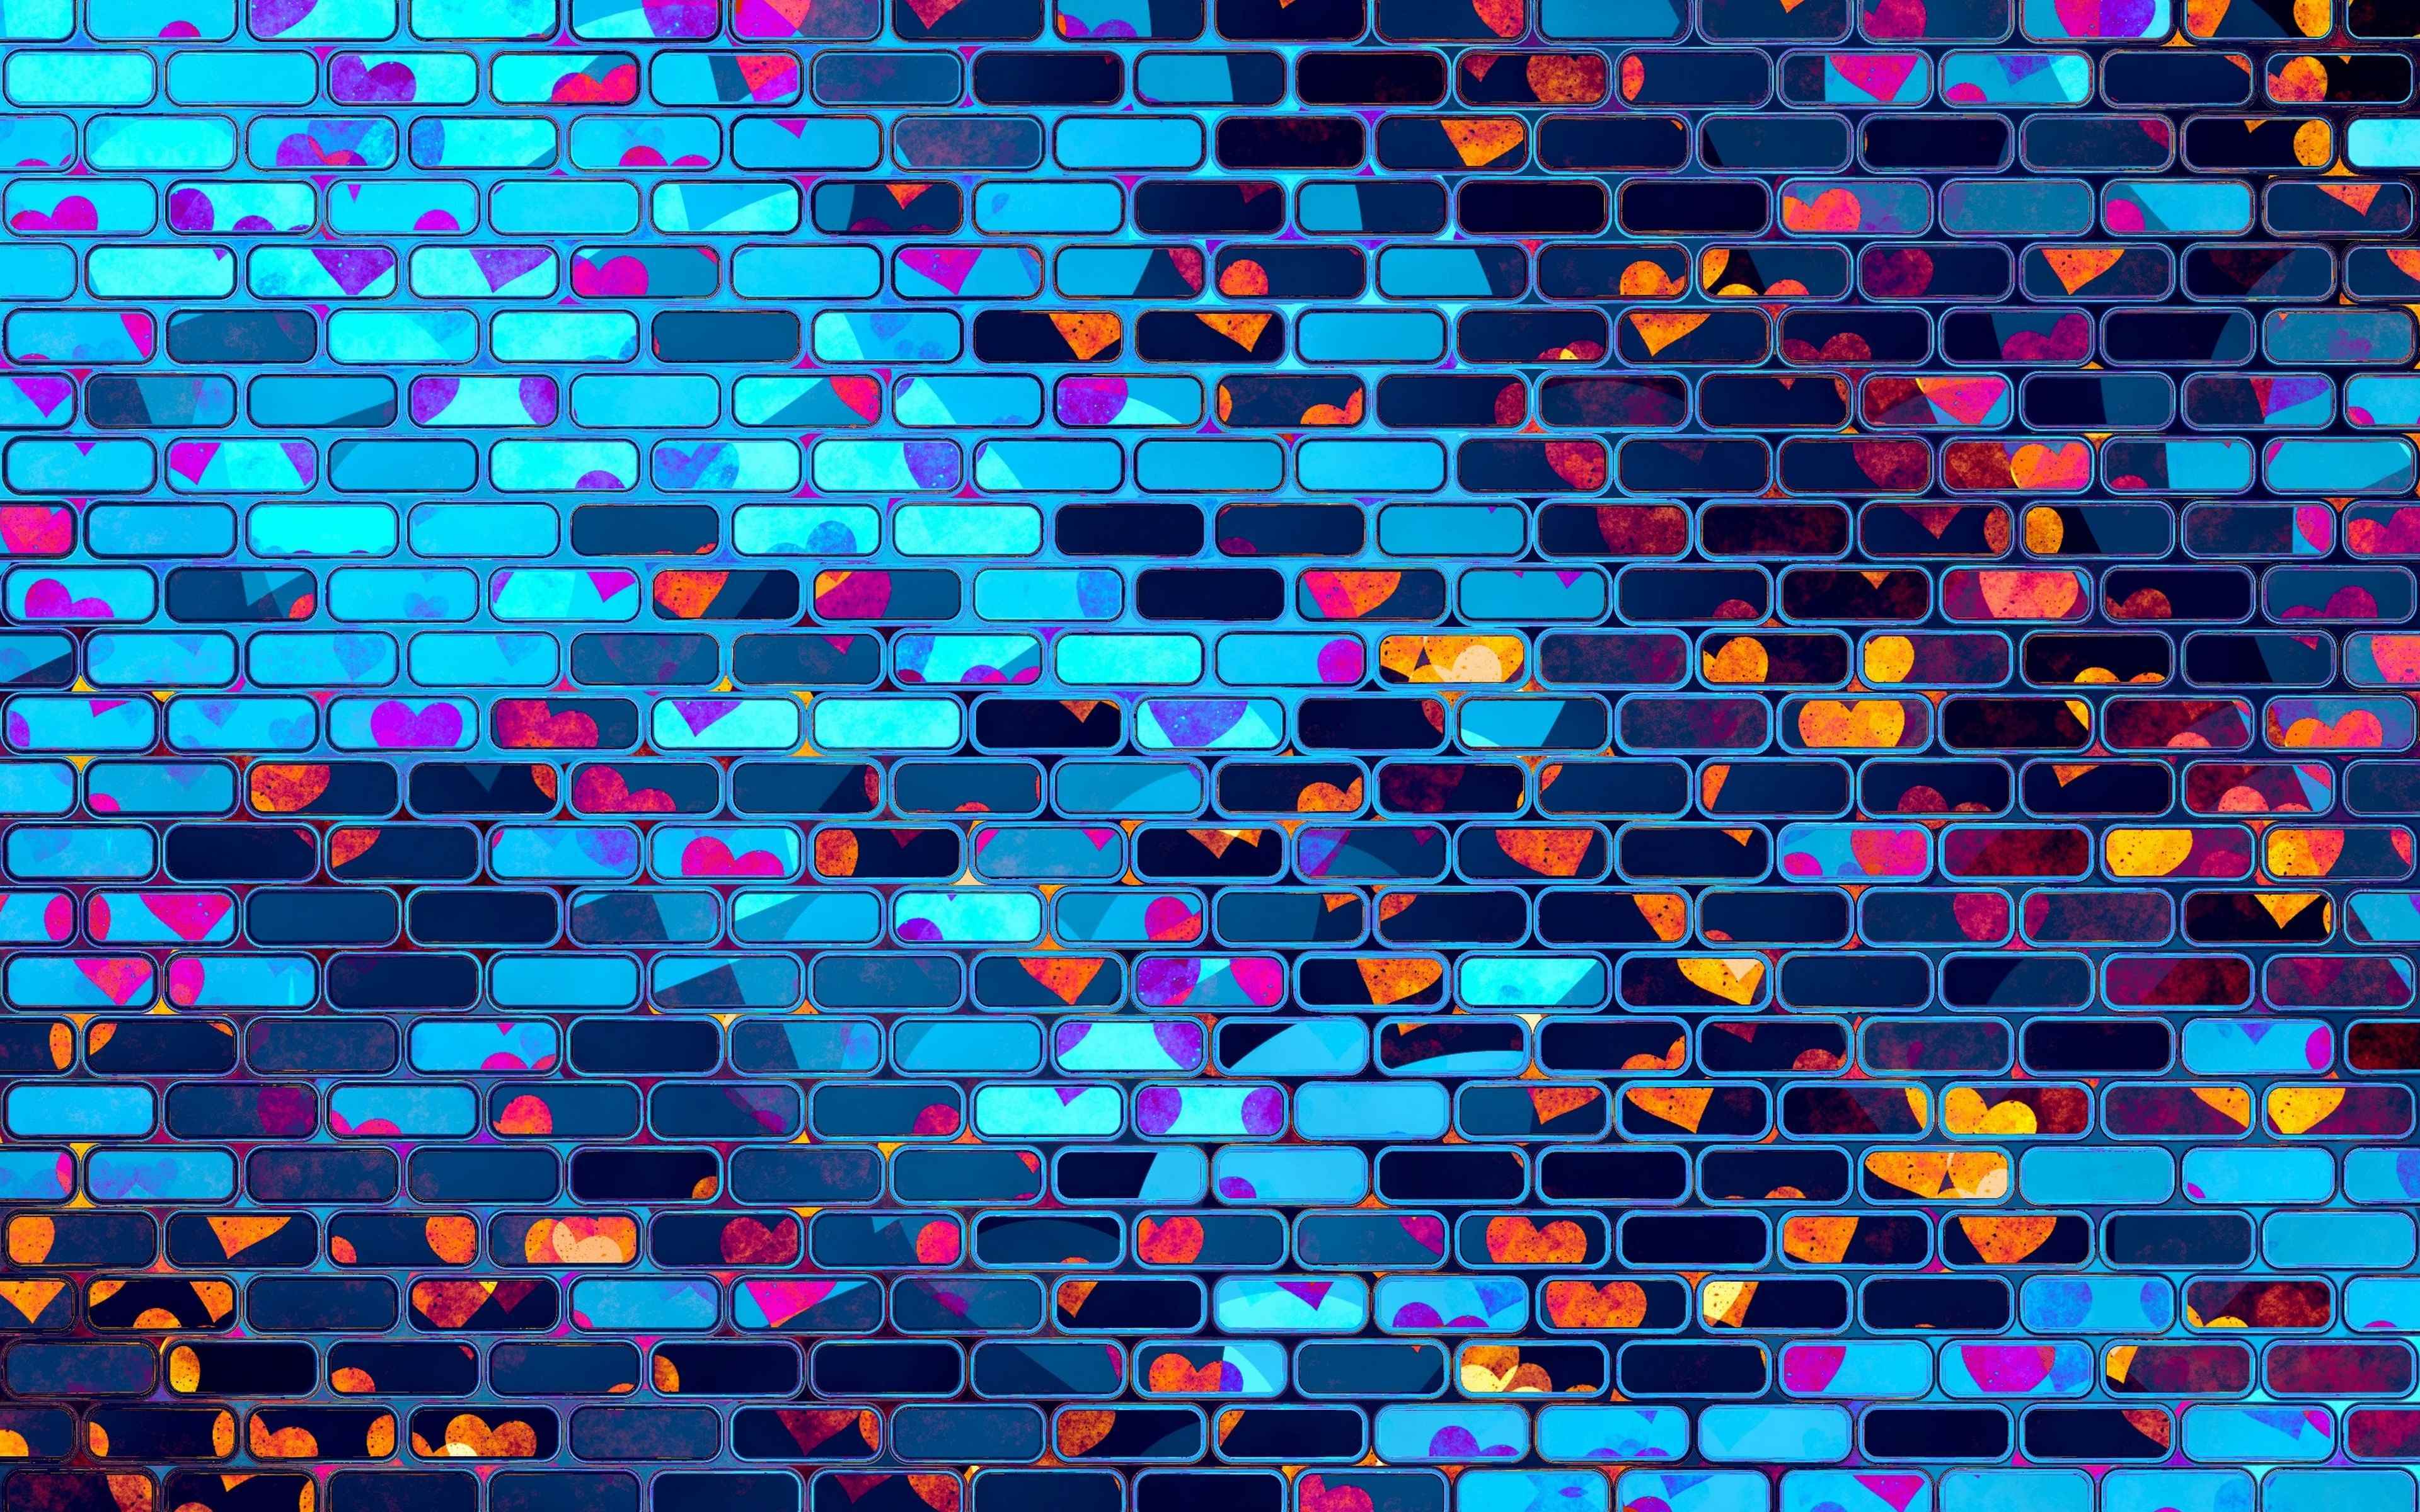 1024x576 для ютуба. Фон для канала. Классный фон. Красивый фон для канала. Разноцветная кирпичная стена.